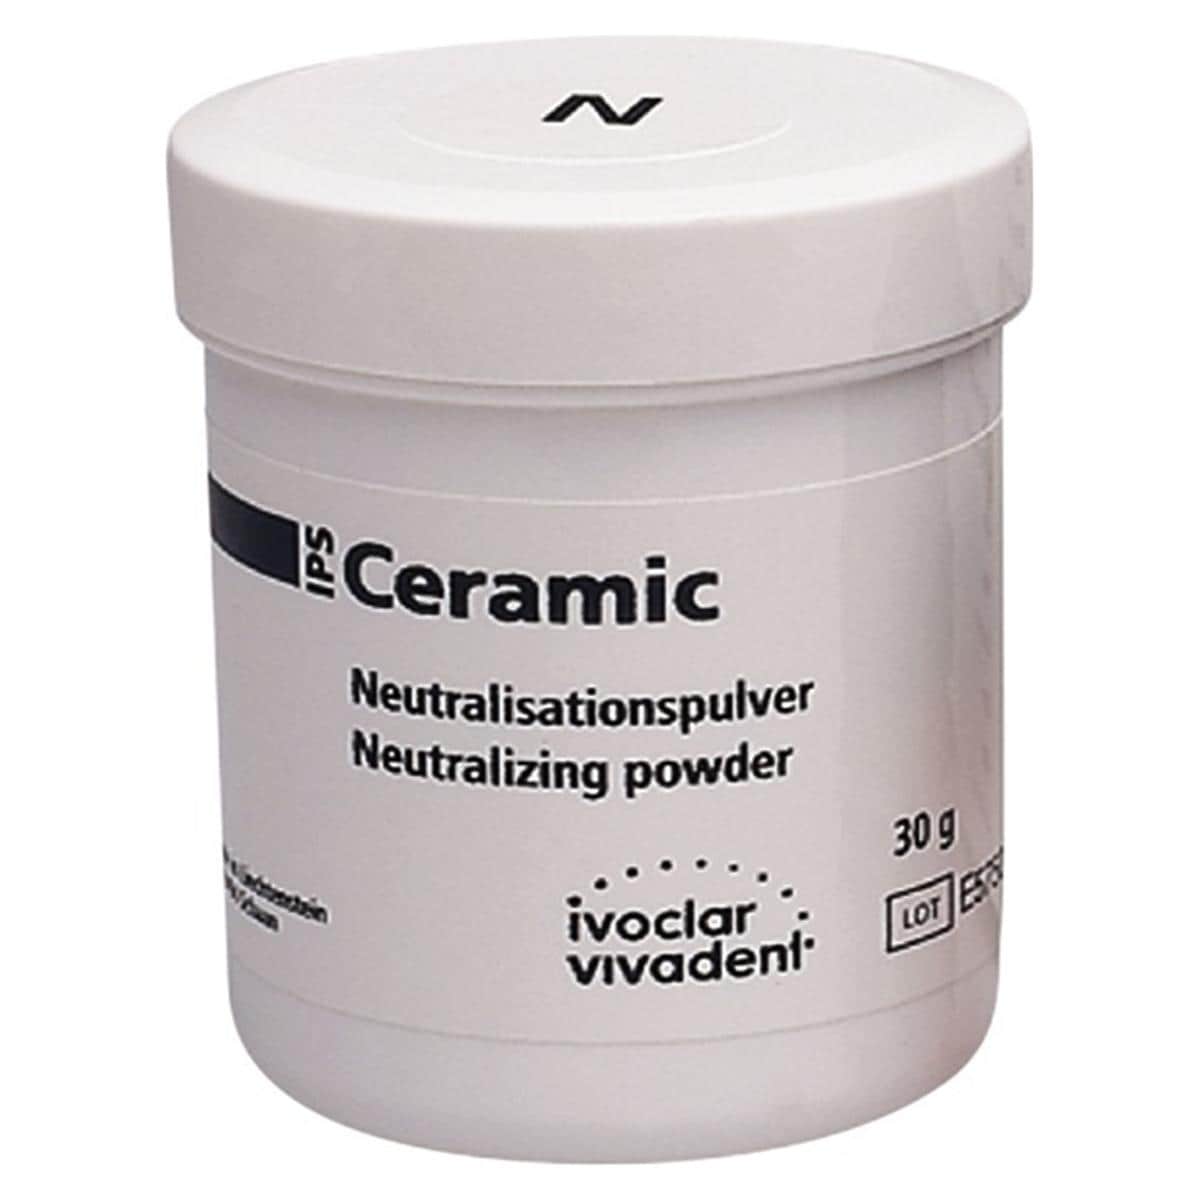 IPS Ceramic poudre de neutralisation - Flacon, 30 g